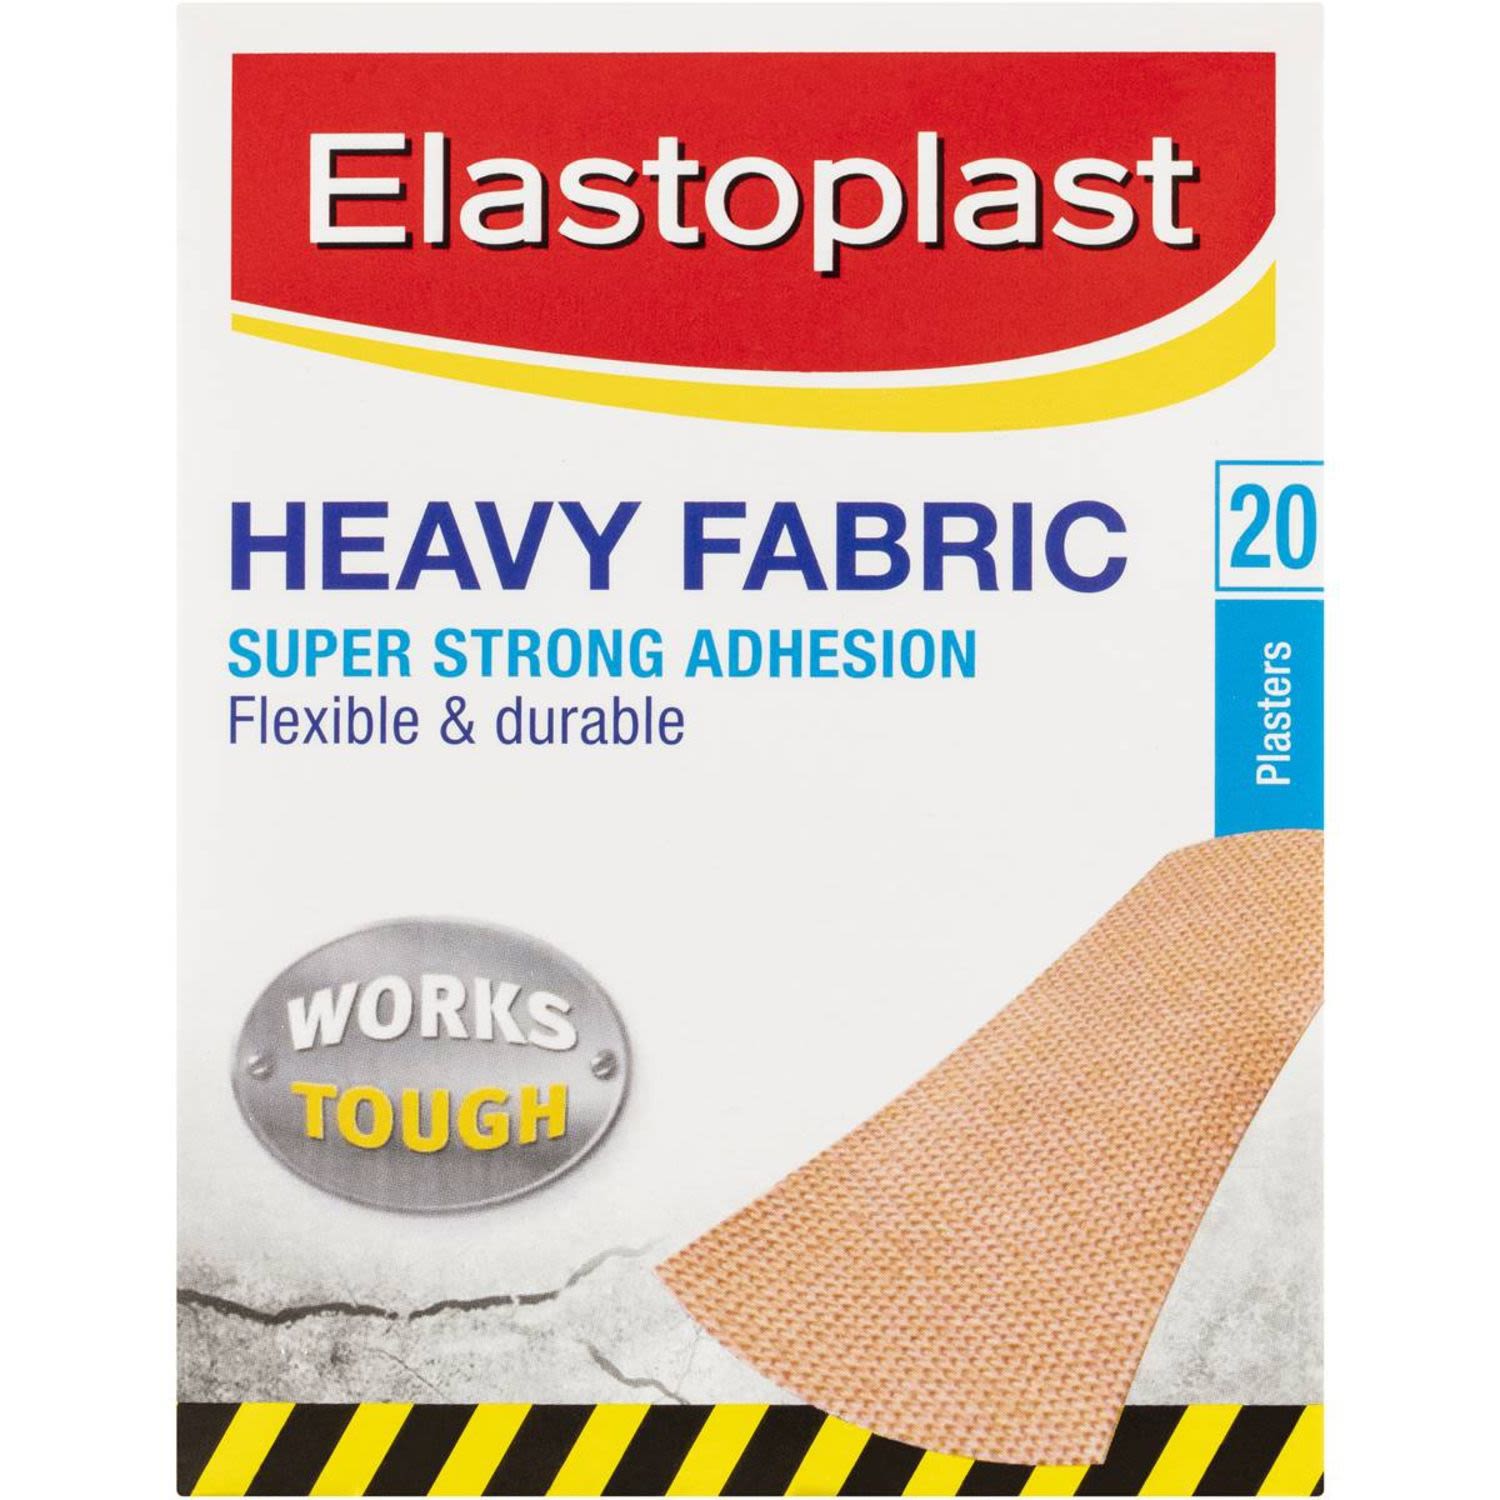 Elastoplast Fabric Strips Heavy Duty, 20 Each